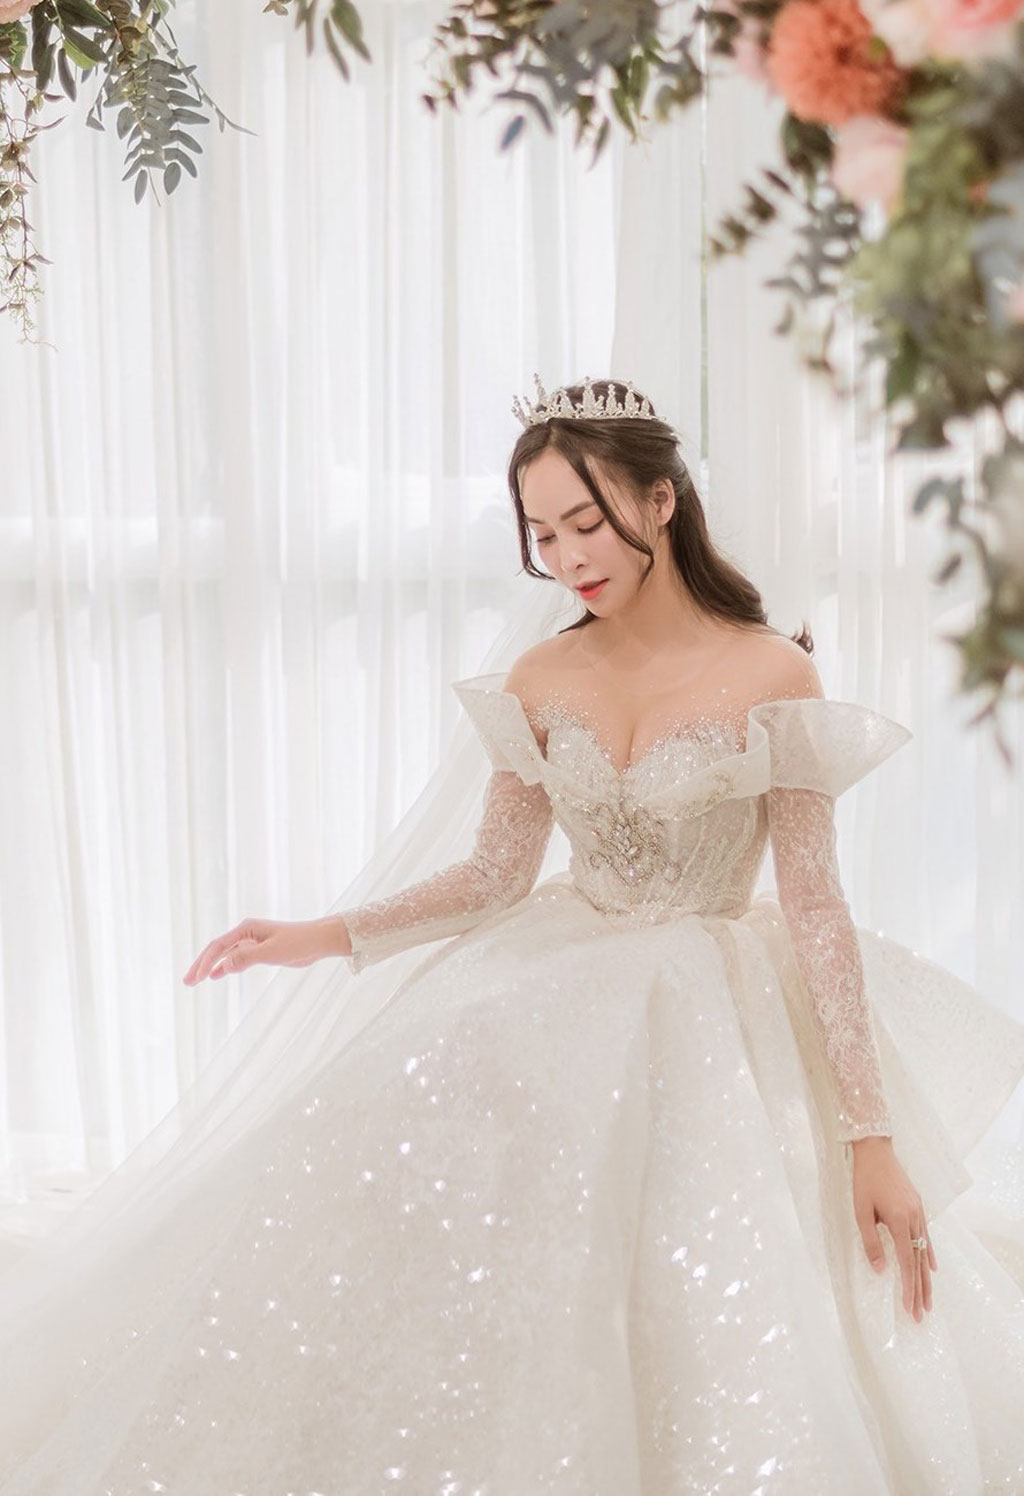 Bộ ảnh diện váy cưới đầu tiên của Xoài Non sau thiết kế 28 tỷ đình đám -  Phụ kiện trang trí tiệc cưới